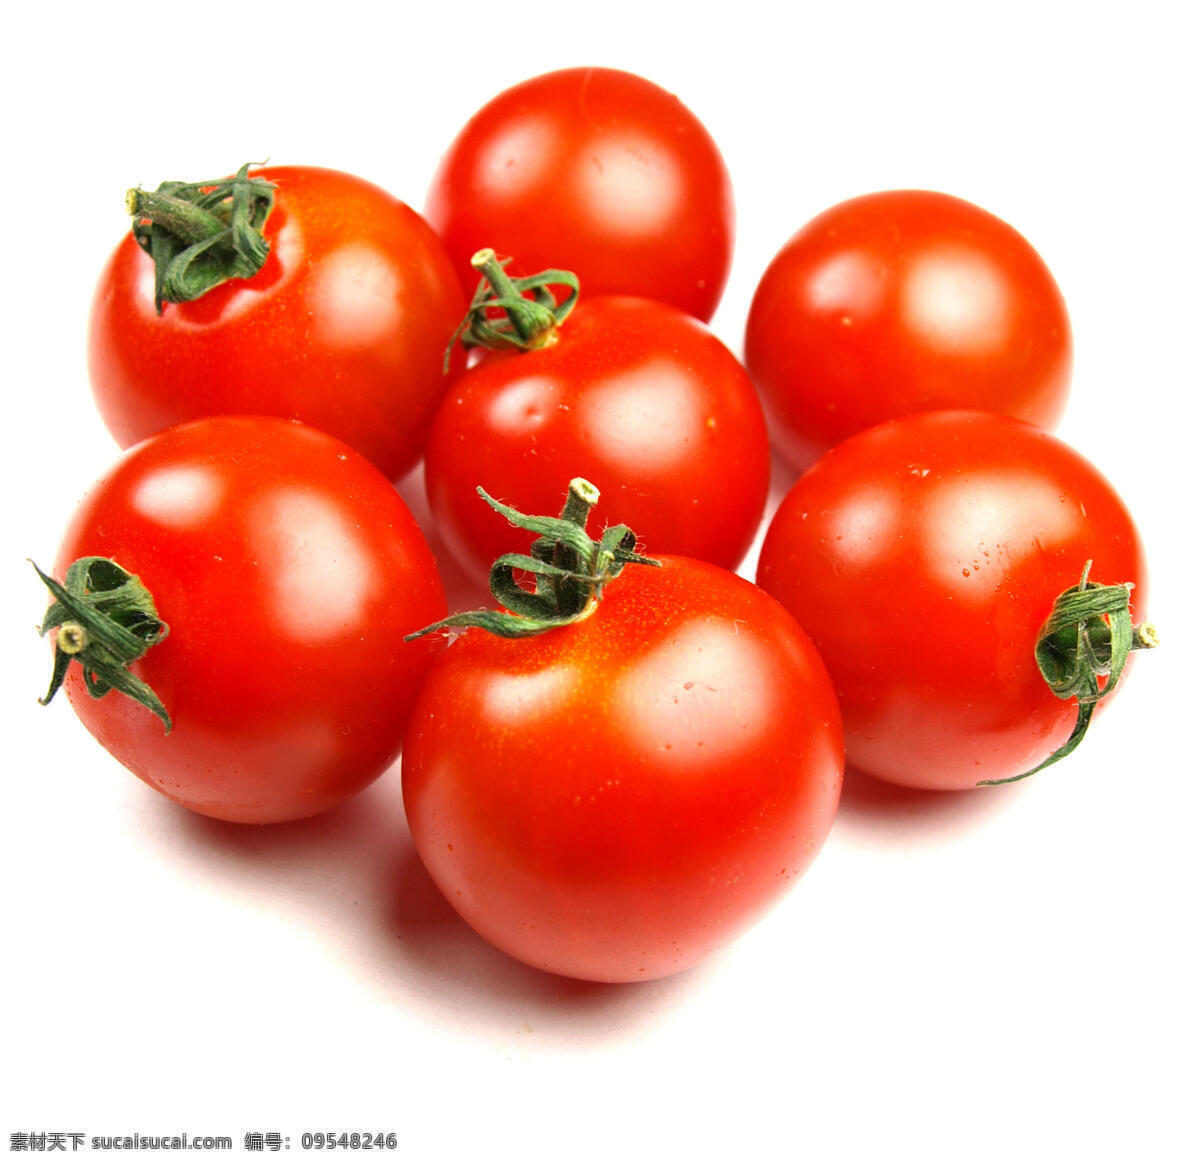 红色 蕃茄 西红柿 蕃茄图片 蕃茄高清图片 西红柿图片 高清 蔬菜 高清图片 蔬菜图片 餐饮美食